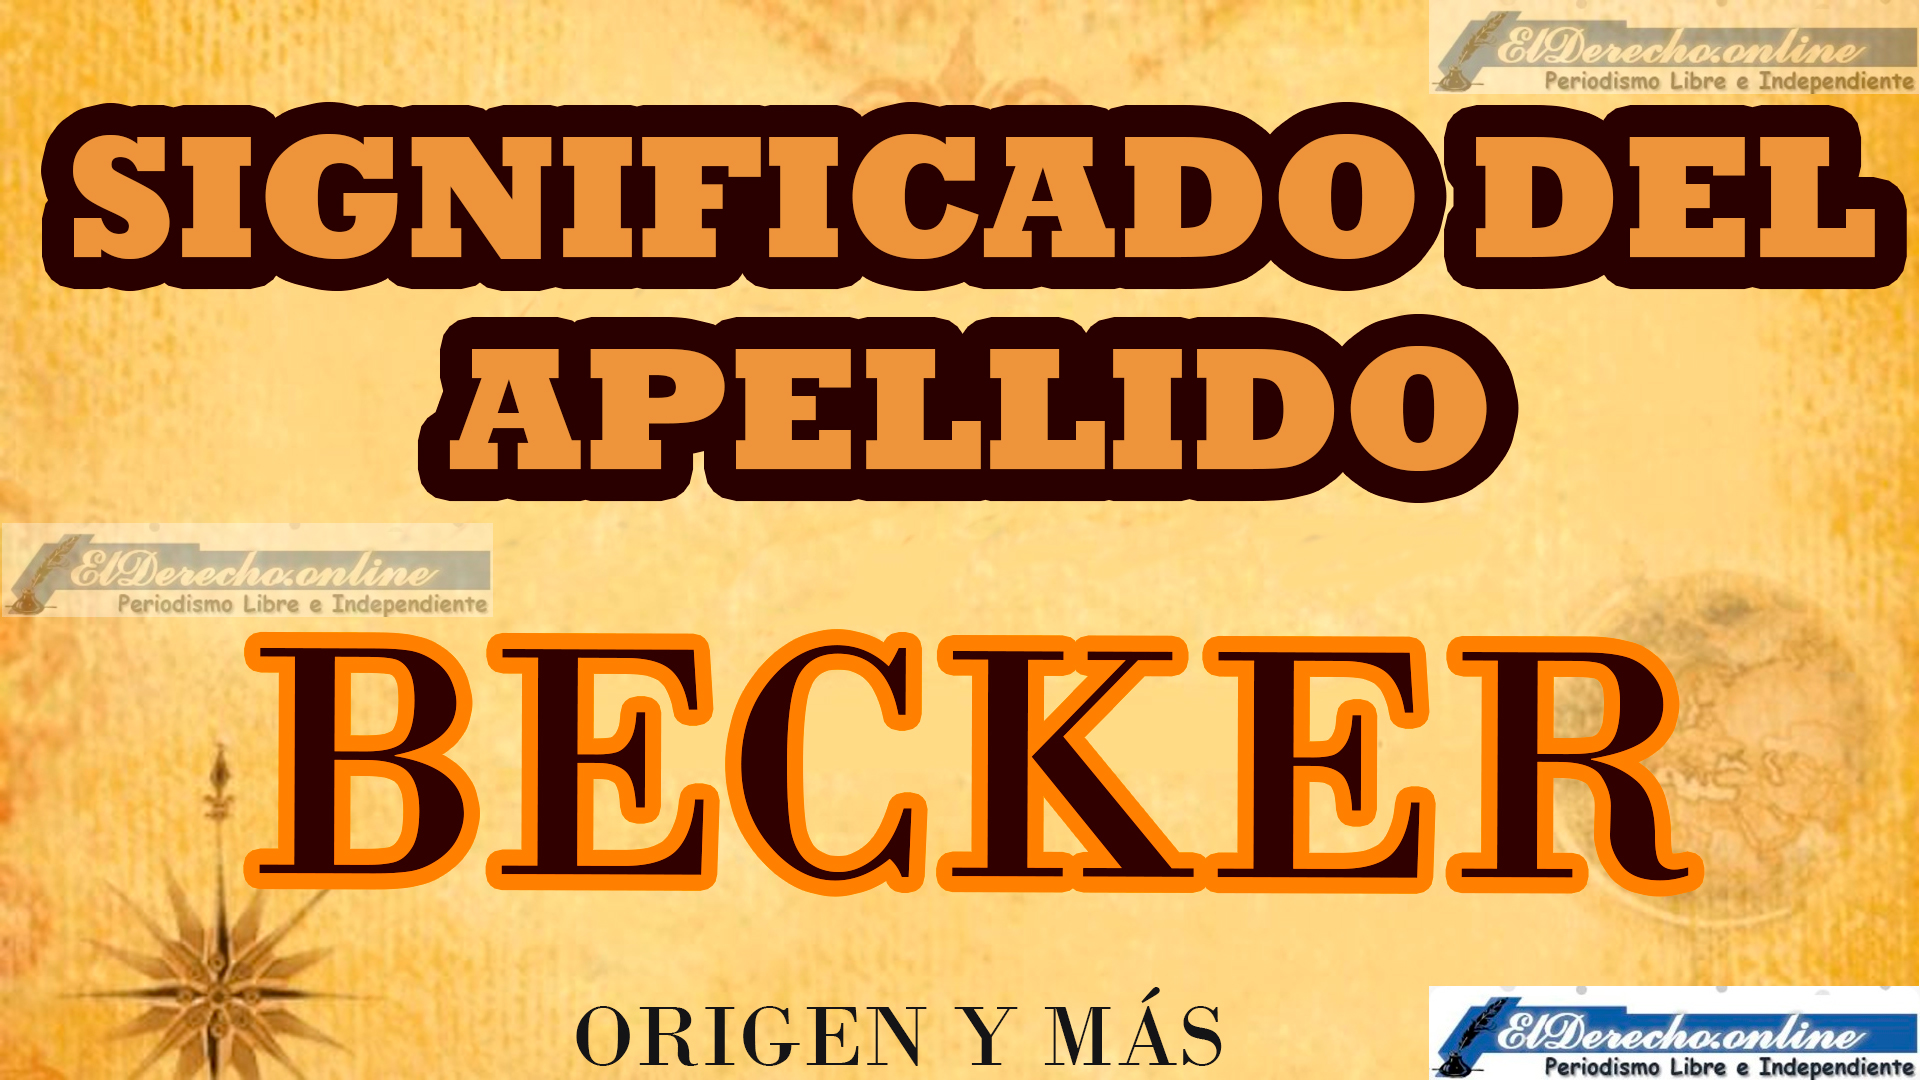 Significado del apellido Becker, Origen y más